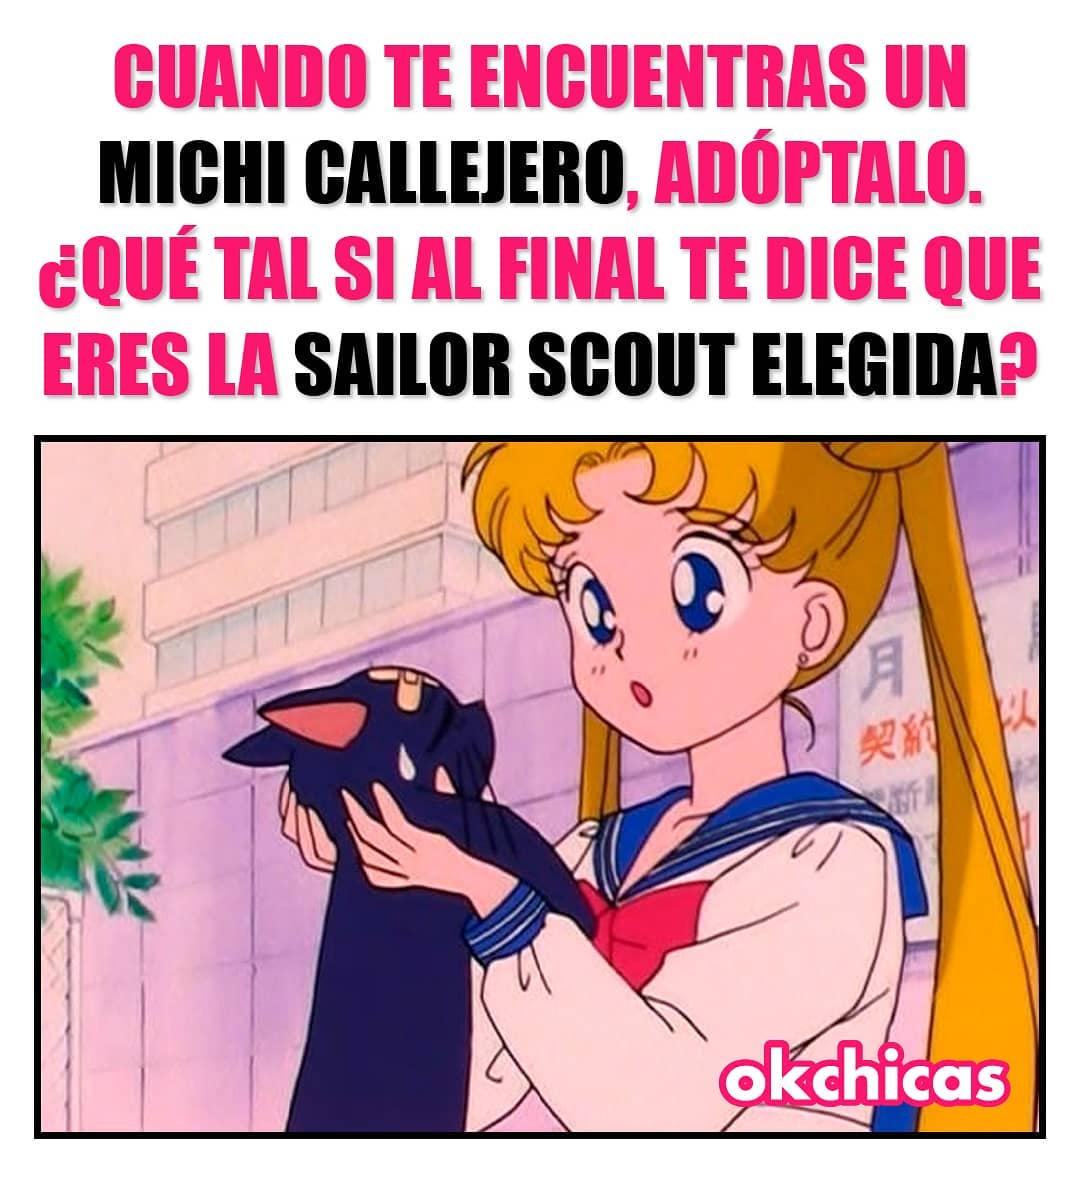 Cuando te encuentras un michi callejero, adóptalo. ¿Qué tal si al final te dice que eres la Sailor Scout elegida?